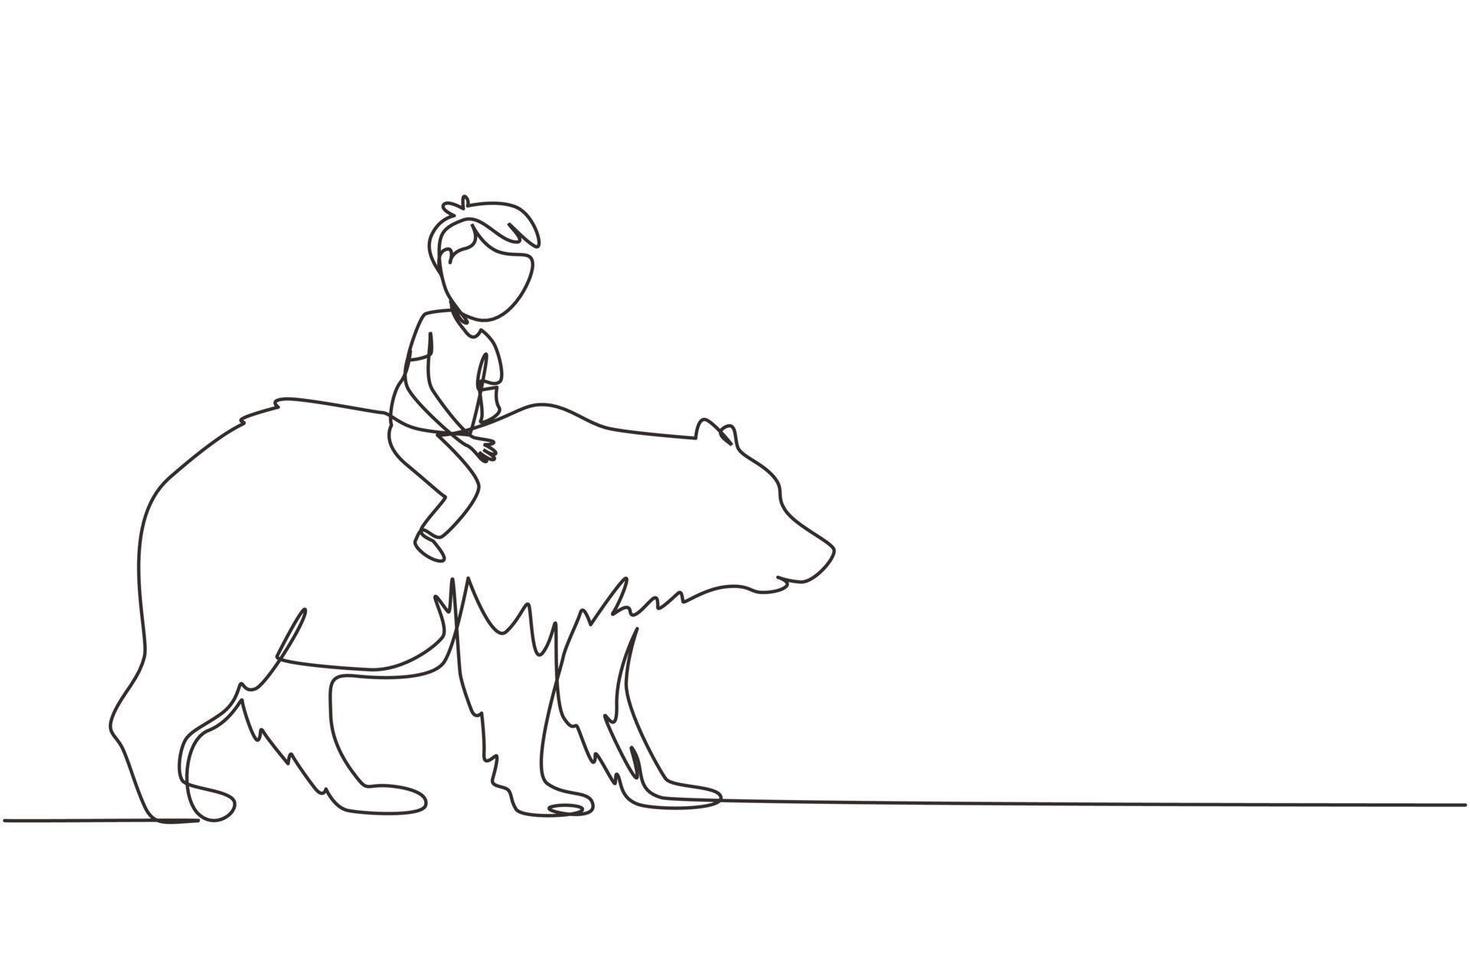 Single One Line Drawing glücklicher kleiner Junge, der braunen Grizzlybären reitet. Kind sitzt auf dem Rücken großer Bär bei Zirkusveranstaltung. kinder lernen, tiertiere zu reiten. Design-Grafikvektor mit kontinuierlicher Linie vektor